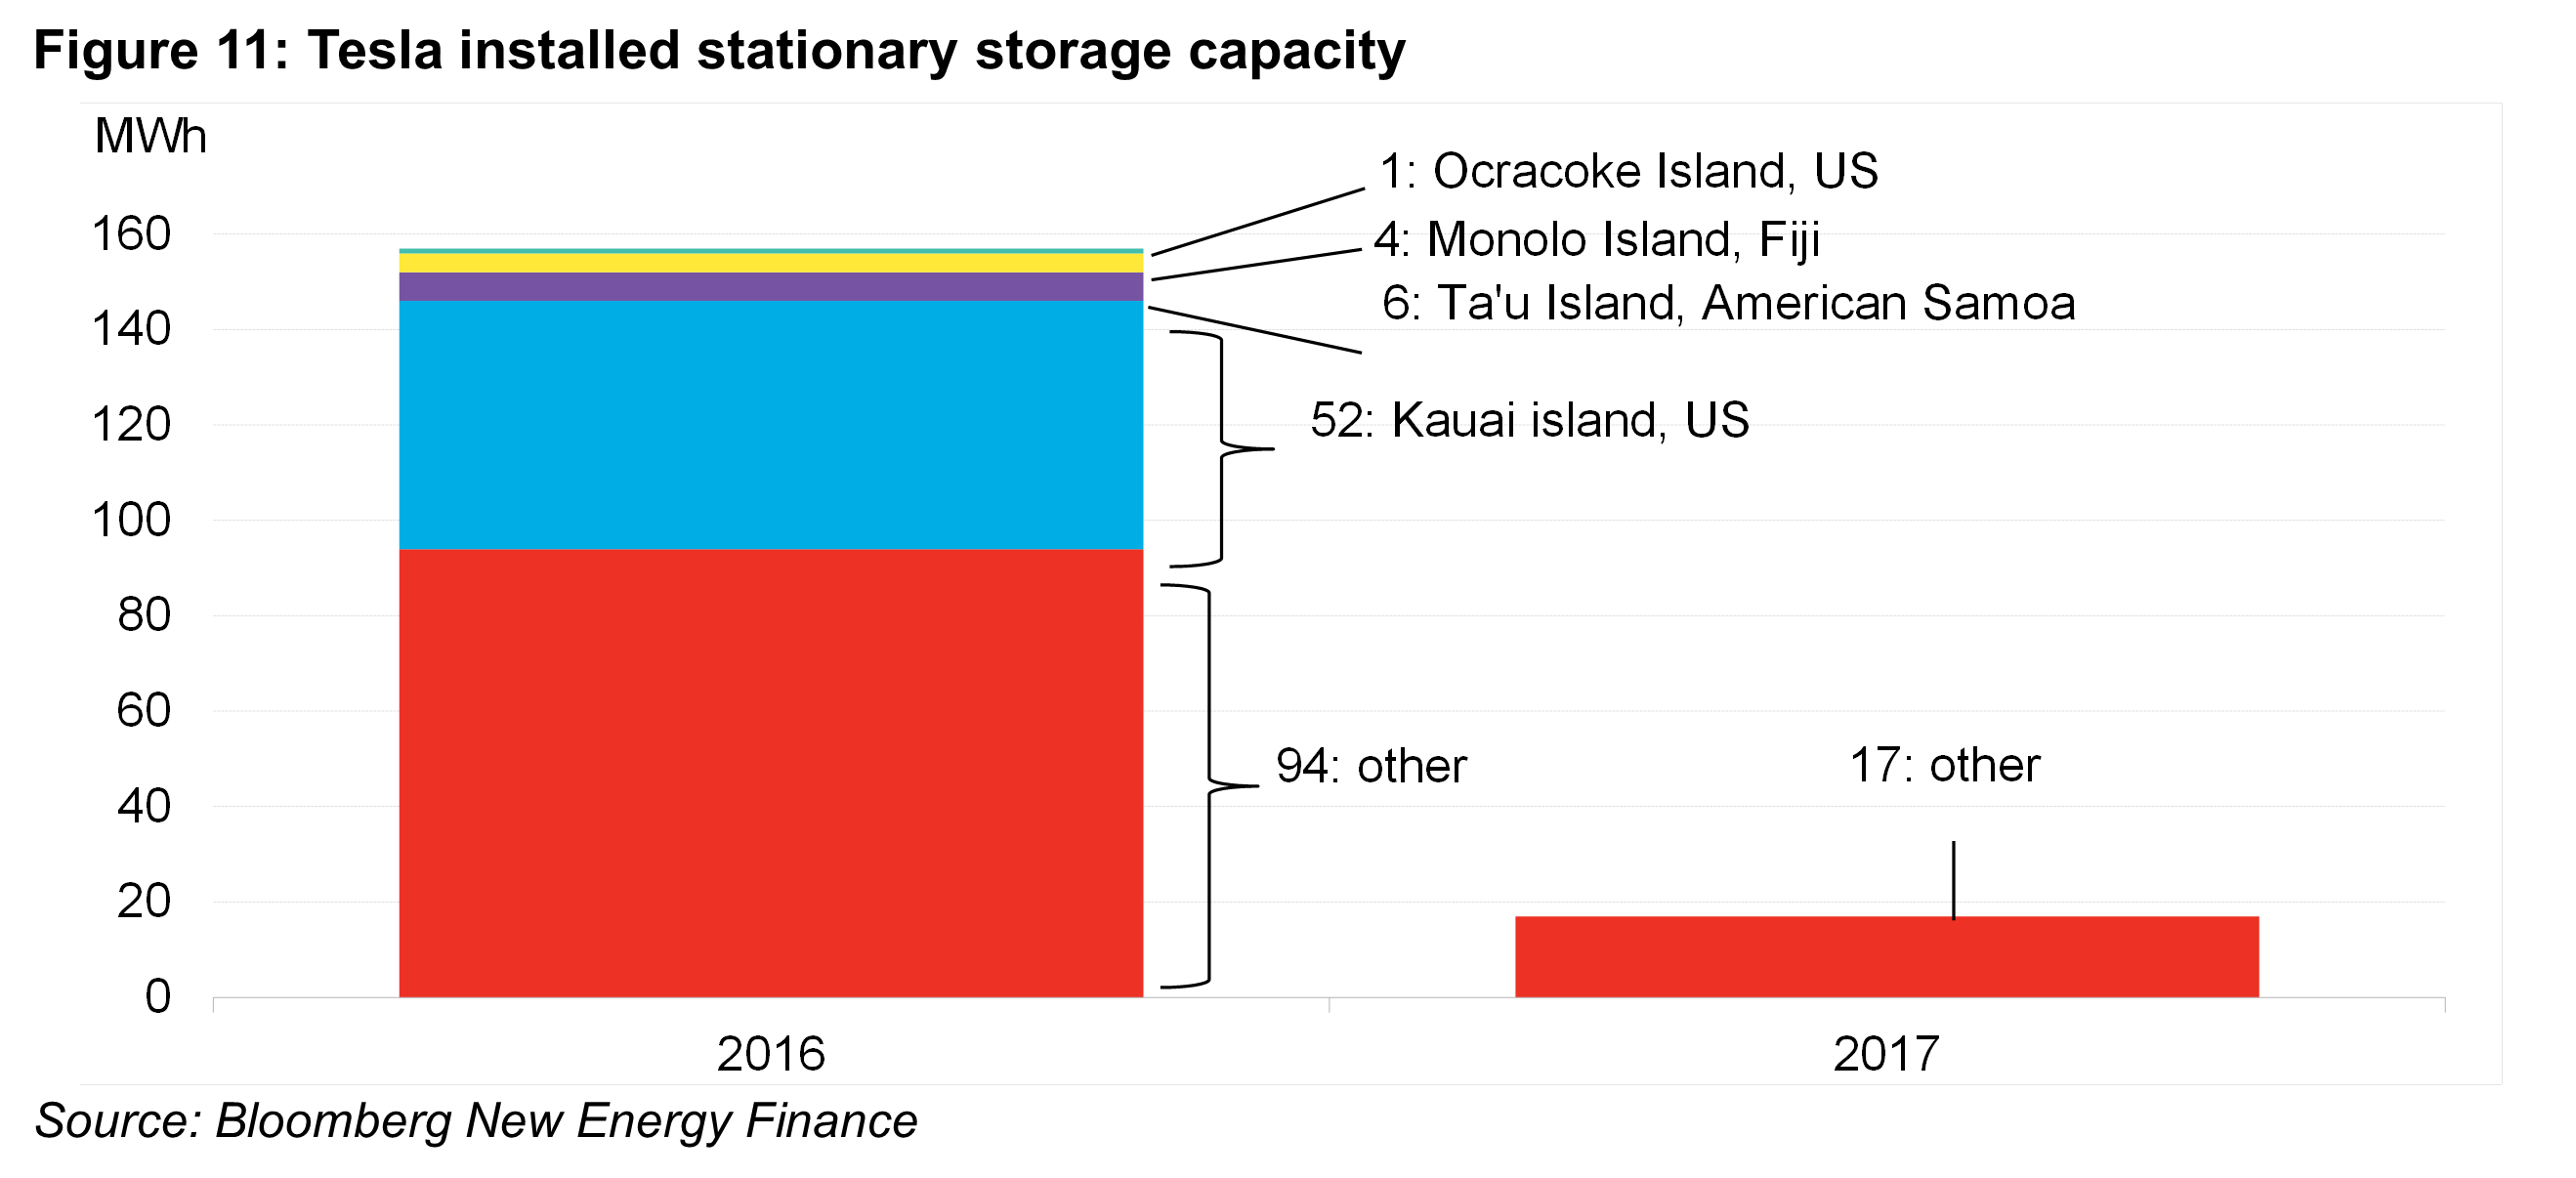 OG - Fig11 - Tesla installed stationary storage capacity